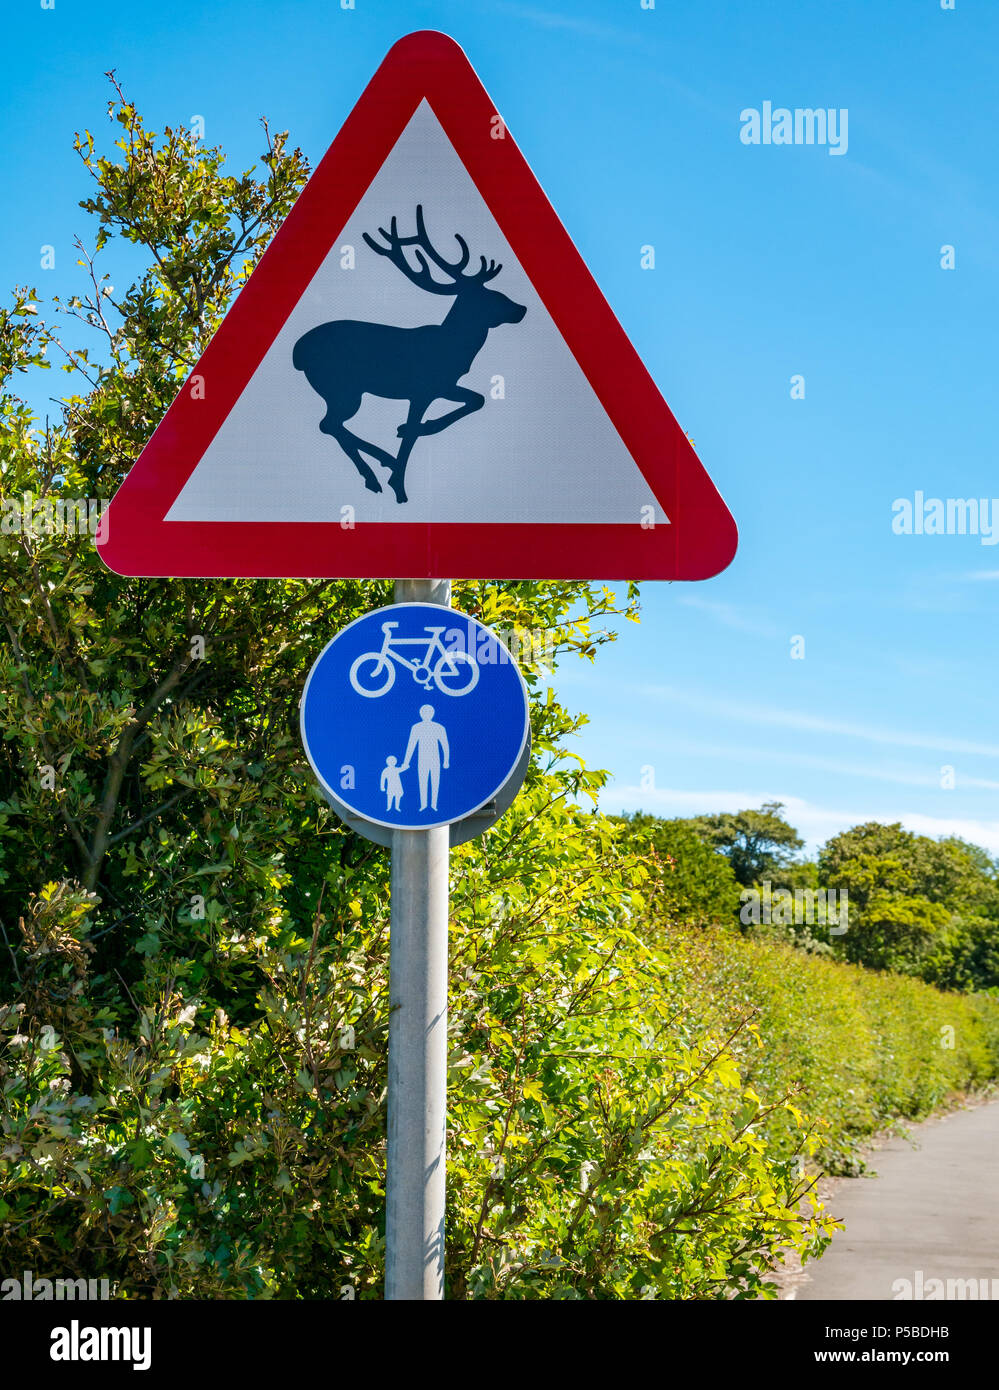 Un triángulo rojo de advertencia para estar atento a la señalización para los ciervos, los niños y los ciclistas en una carretera rural en día soleado con el cielo azul, East Lothian, Escocia, Reino Unido Foto de stock